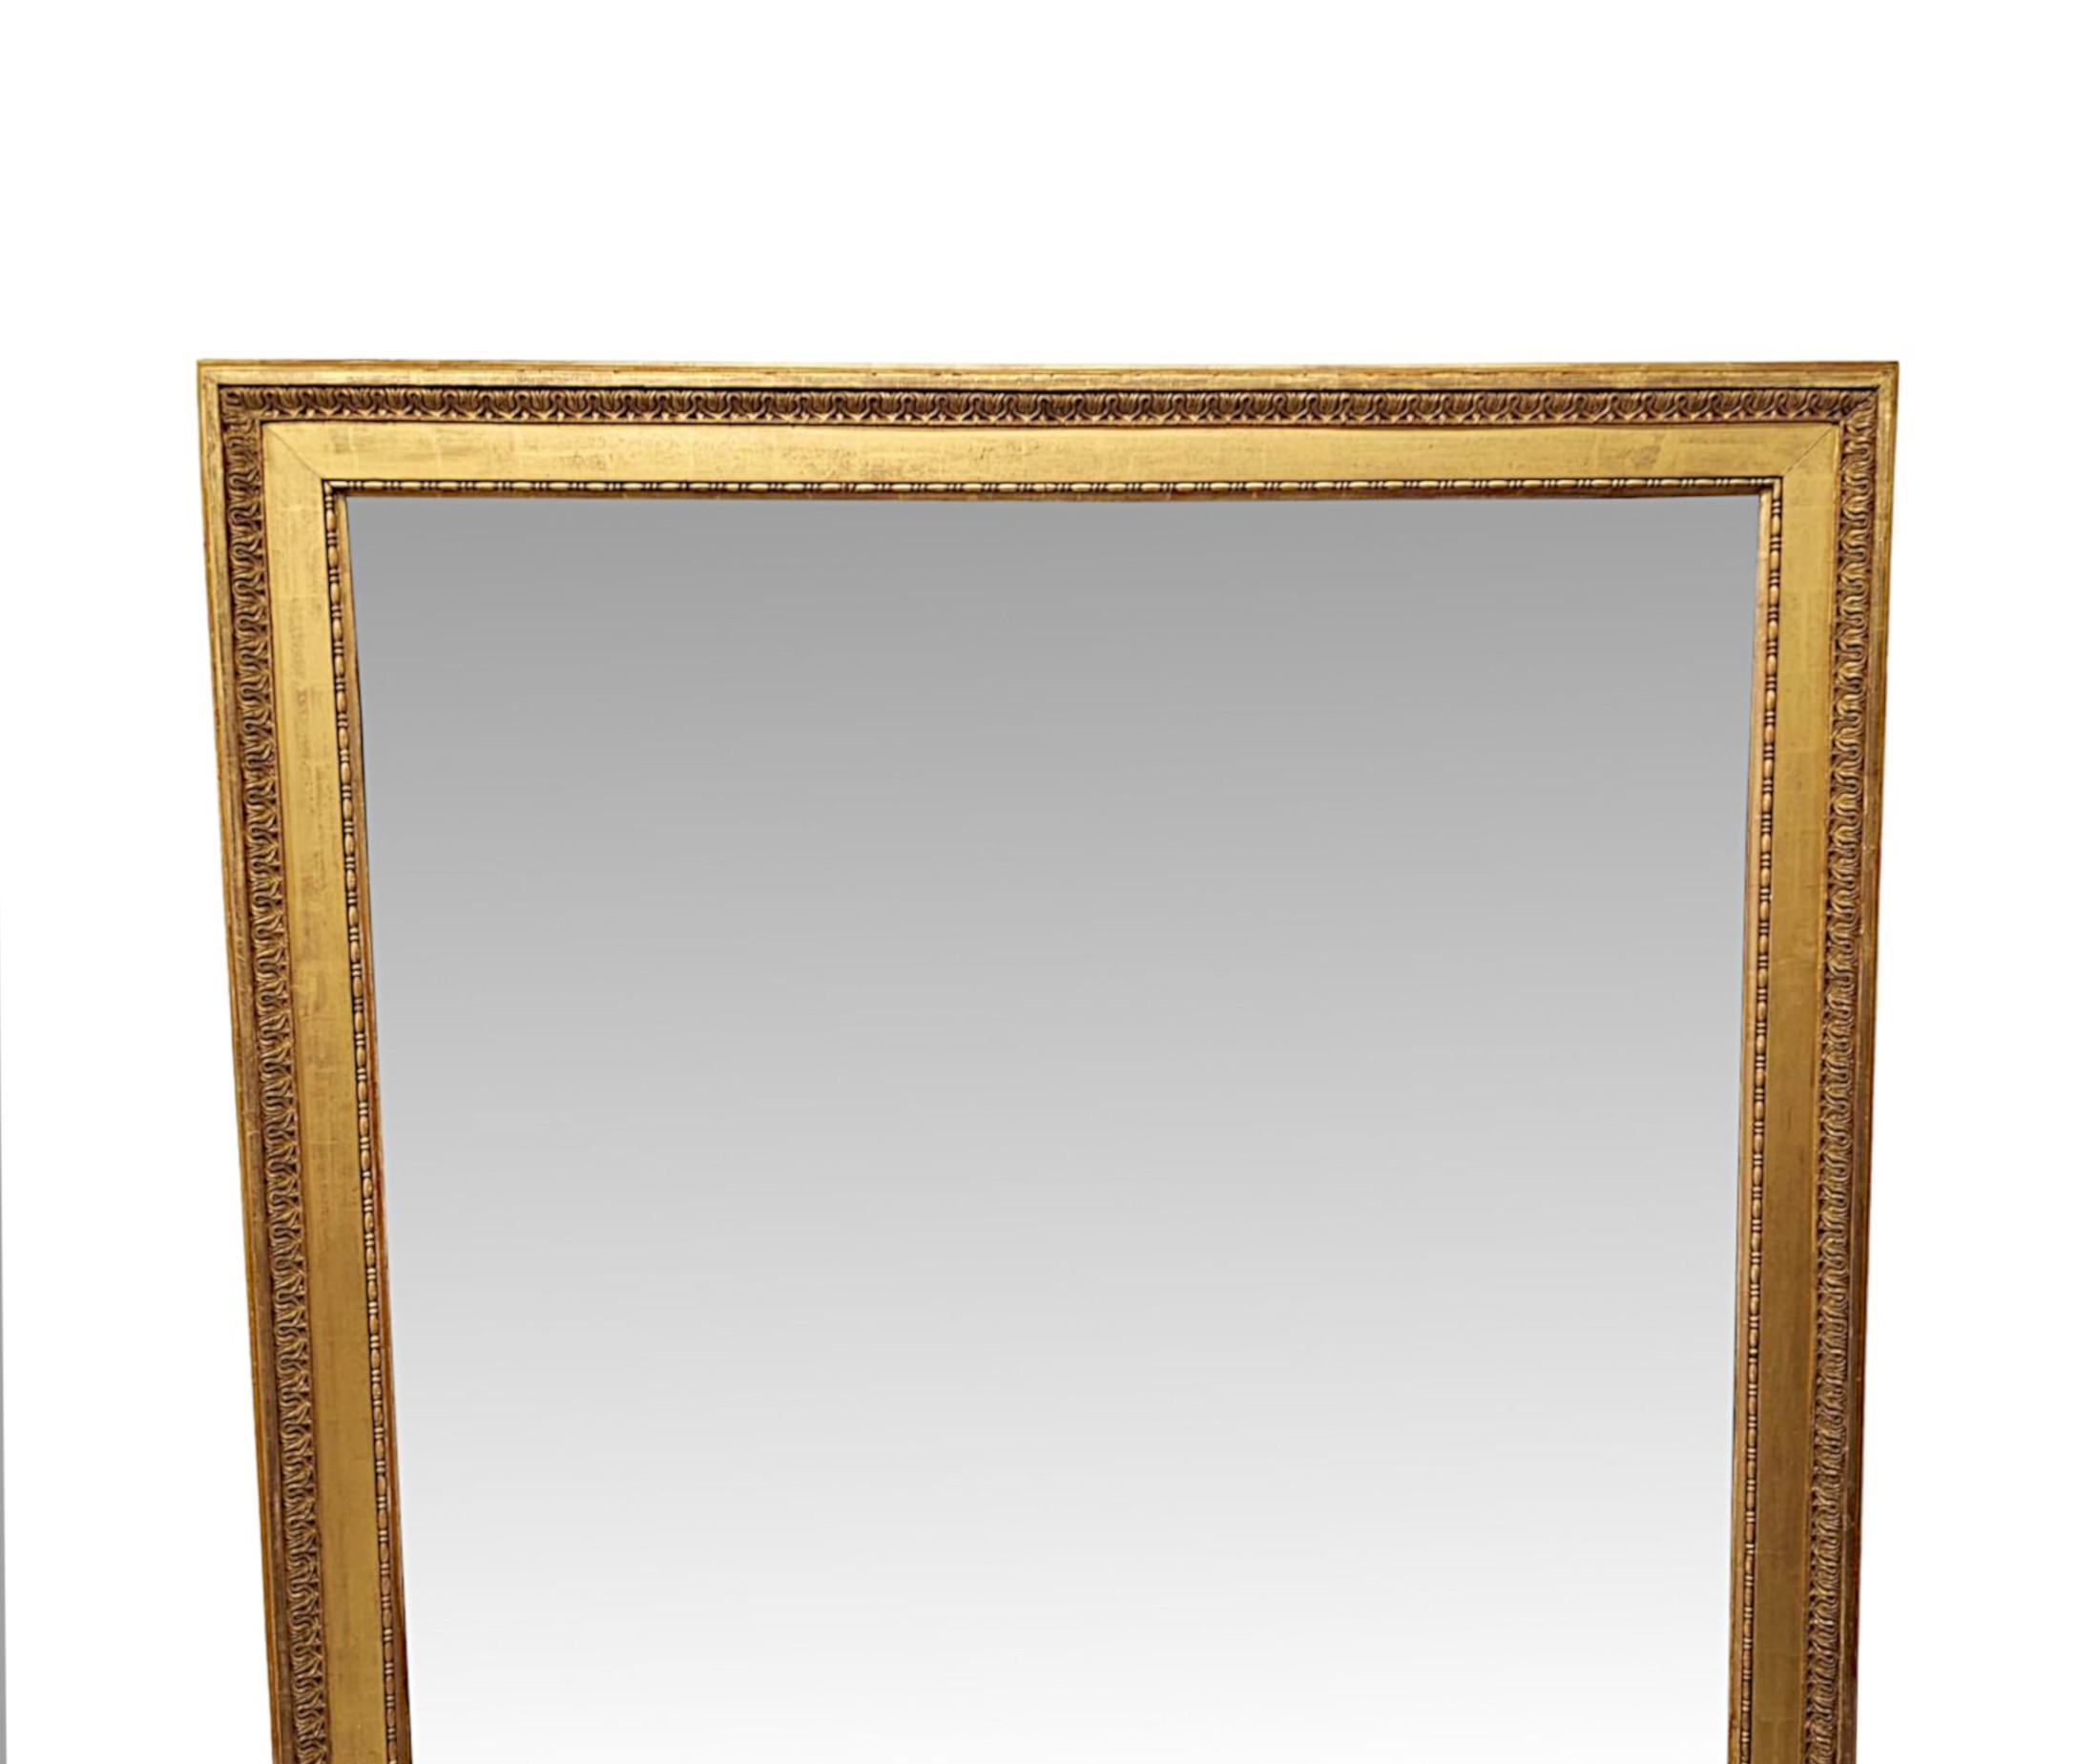 Ein sehr schöner Spiegel aus vergoldetem Holz aus dem 19. Jahrhundert mit beeindruckend großen Proportionen und außergewöhnlicher Qualität.  Die Spiegelglasplatte in rechteckiger Form ist in einen fabelhaft handgeschnitzten und wunderschön